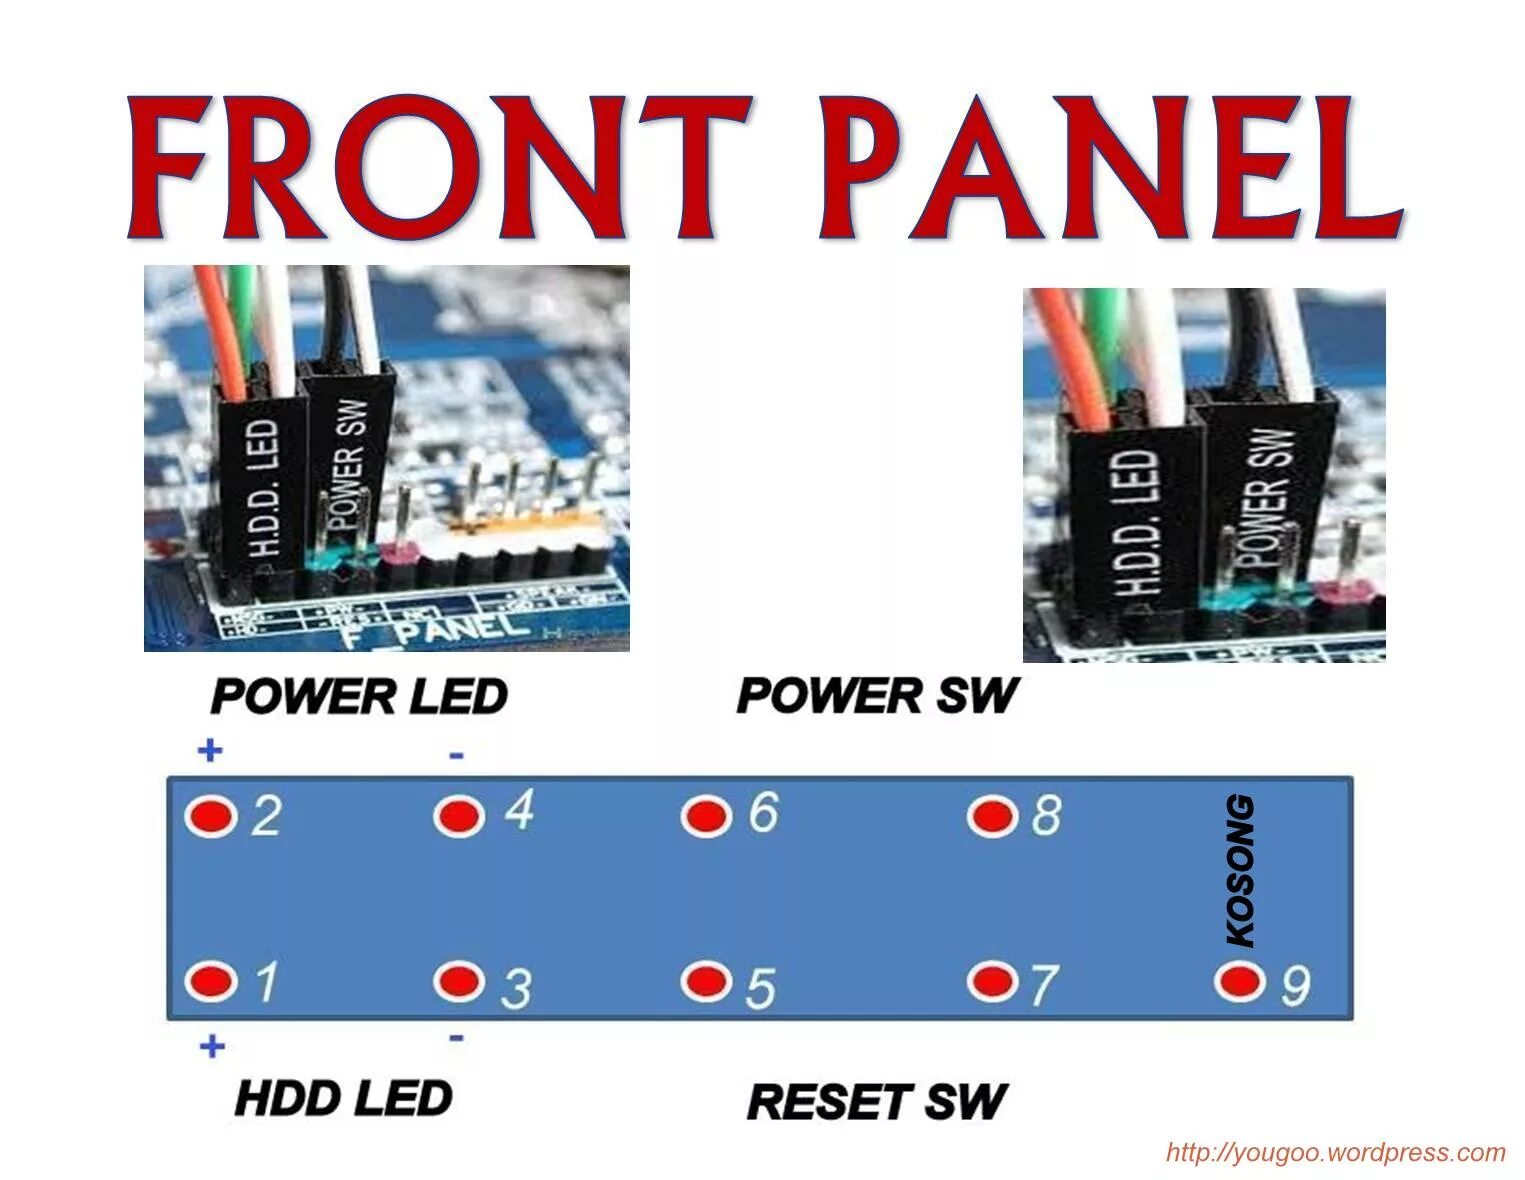 Как подключить повер. Провода reset SW Power SW HDD led. Power led HDD led MSI. Как подключить Power SW Power led HDD led reset SW. Reset SW Power led Power SW HDD led+-.